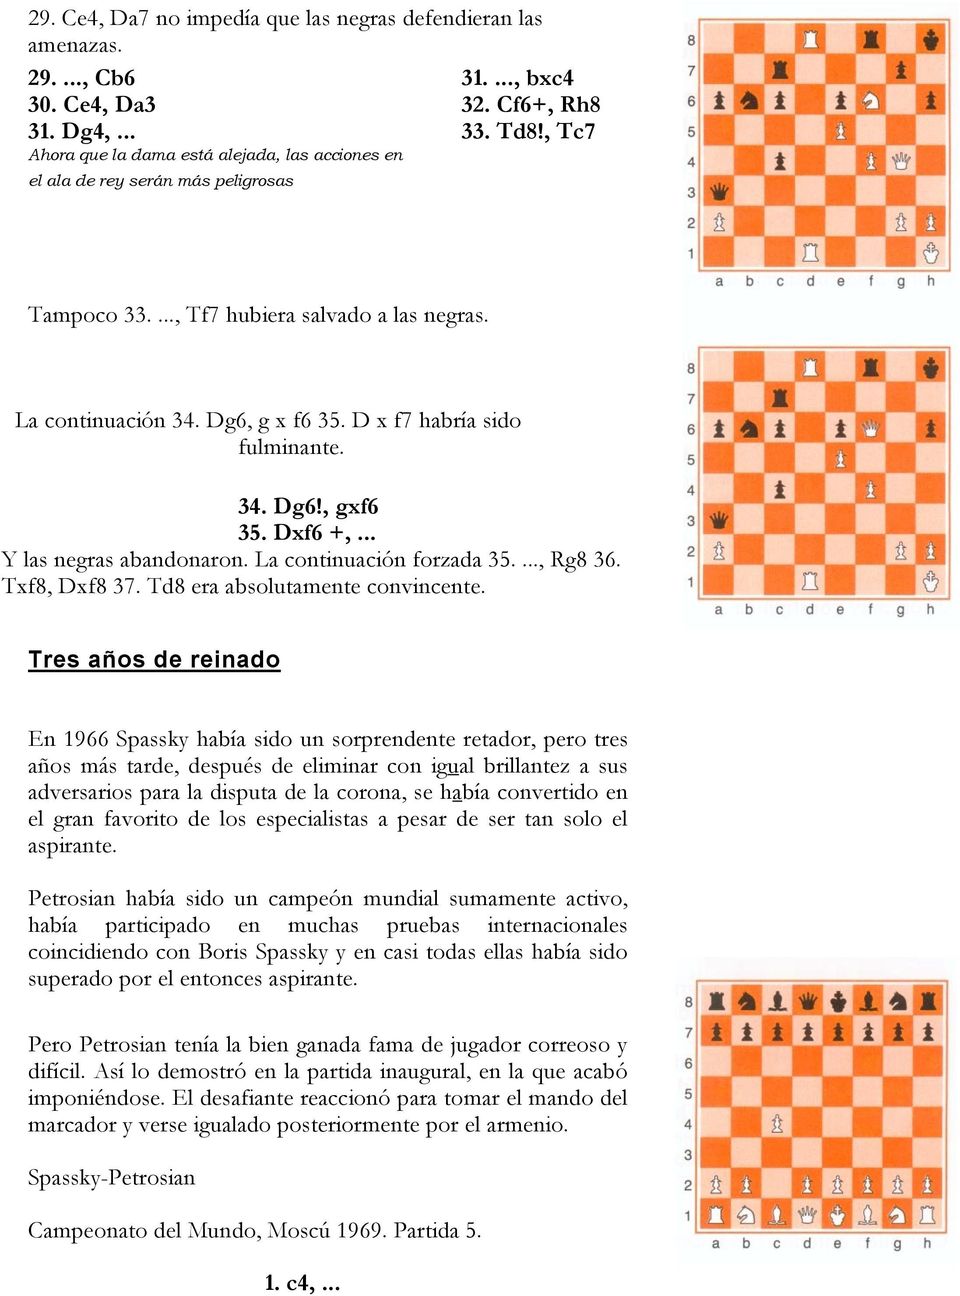 D x f7 habría sido fulminante. 34. Dg6!, gxf6 35. Dxf6 +,... Y las negras abandonaron. La continuación forzada 35...., Rg8 36. Txf8, Dxf8 37. Td8 era absolutamente convincente.